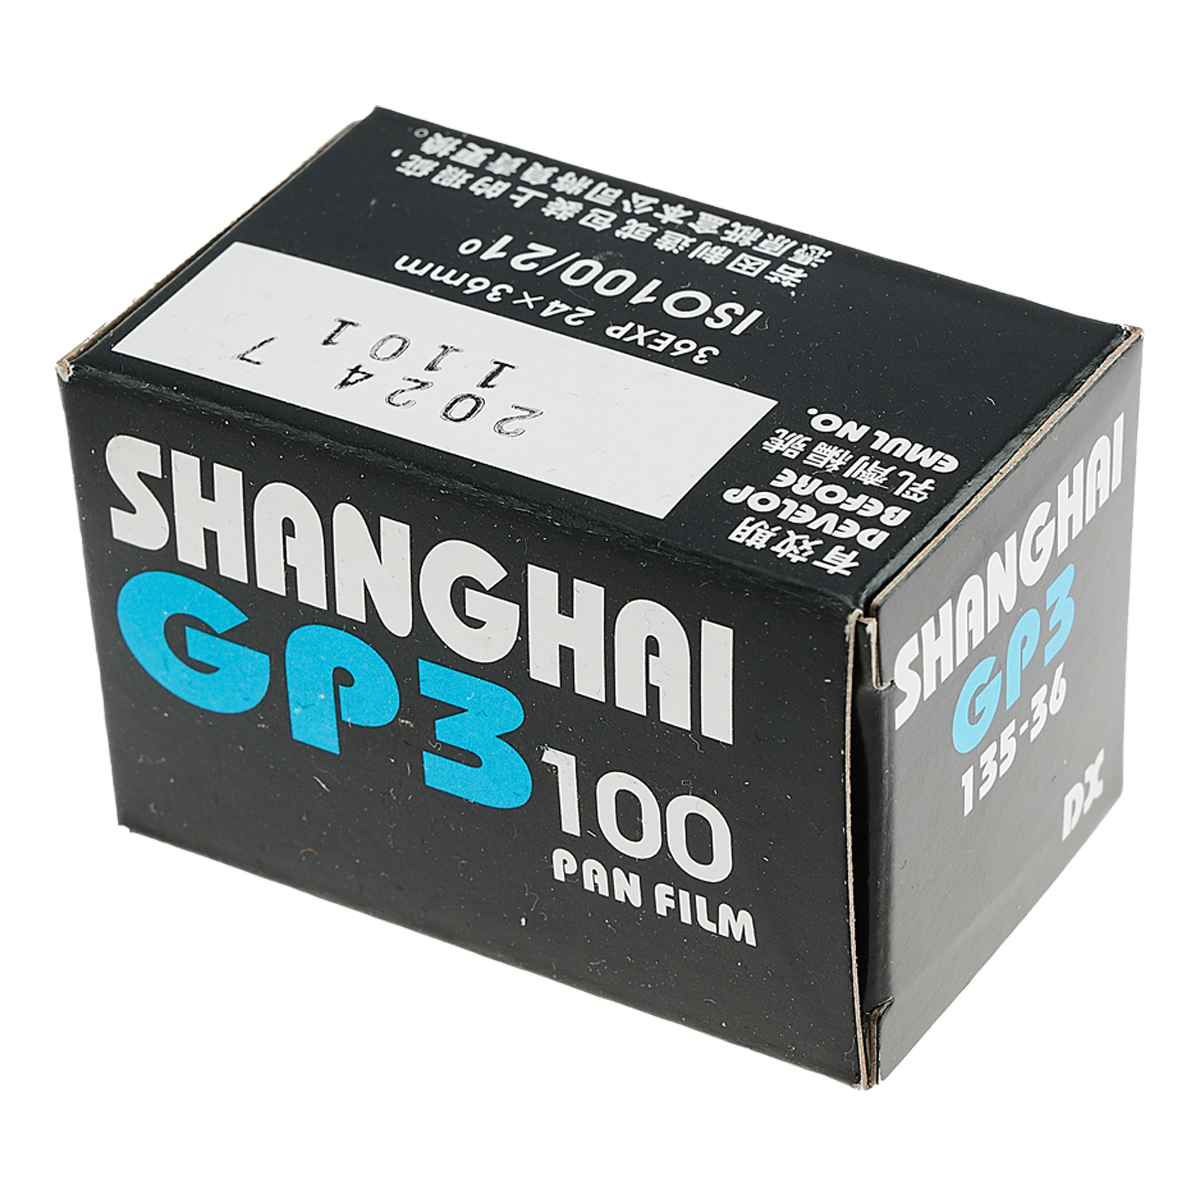 Shanghai GP3 100 135